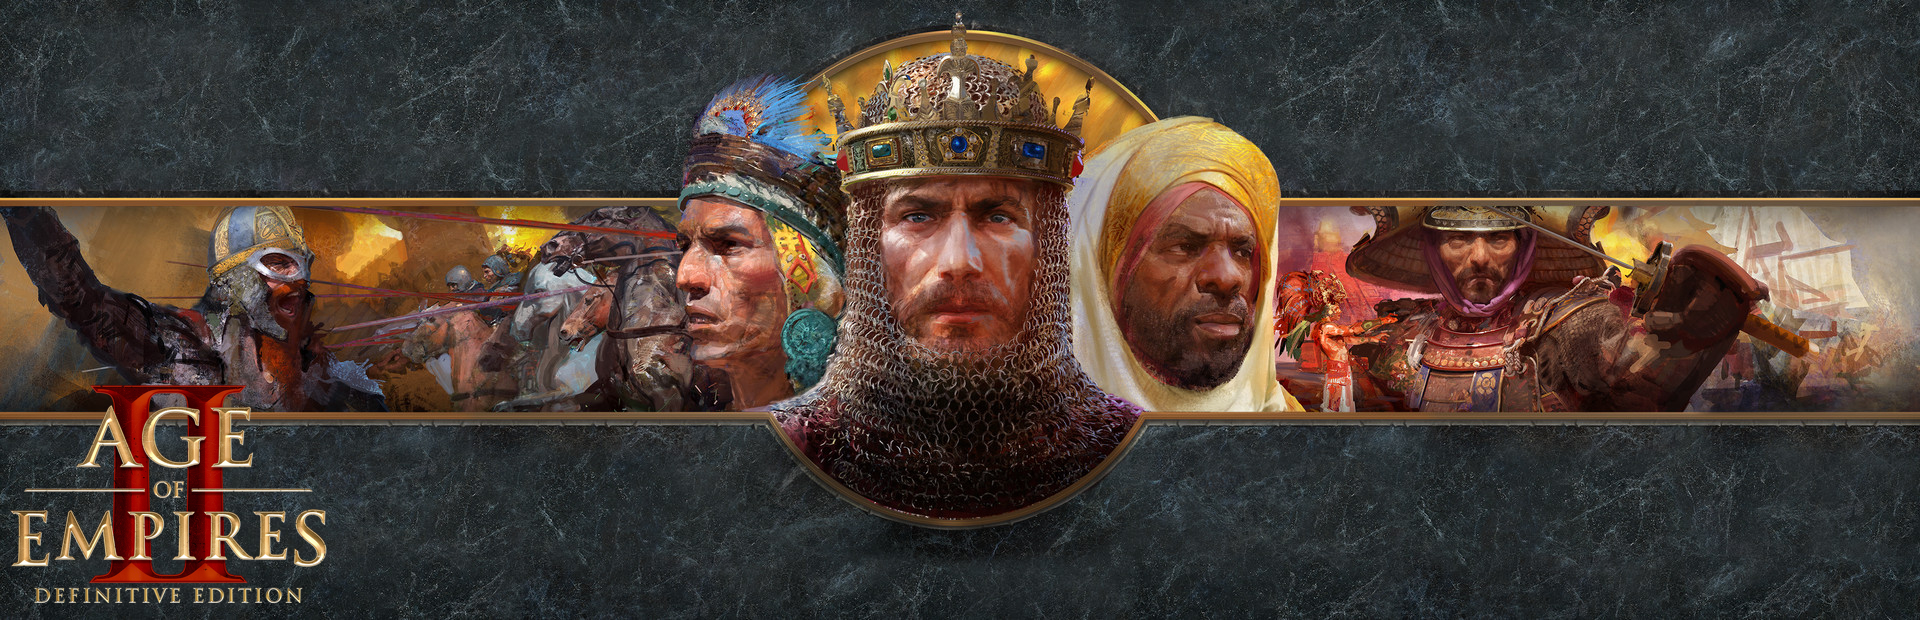 دانلود بازی Age of Empires II: Definitive Edition برای پی سی | گیمباتو